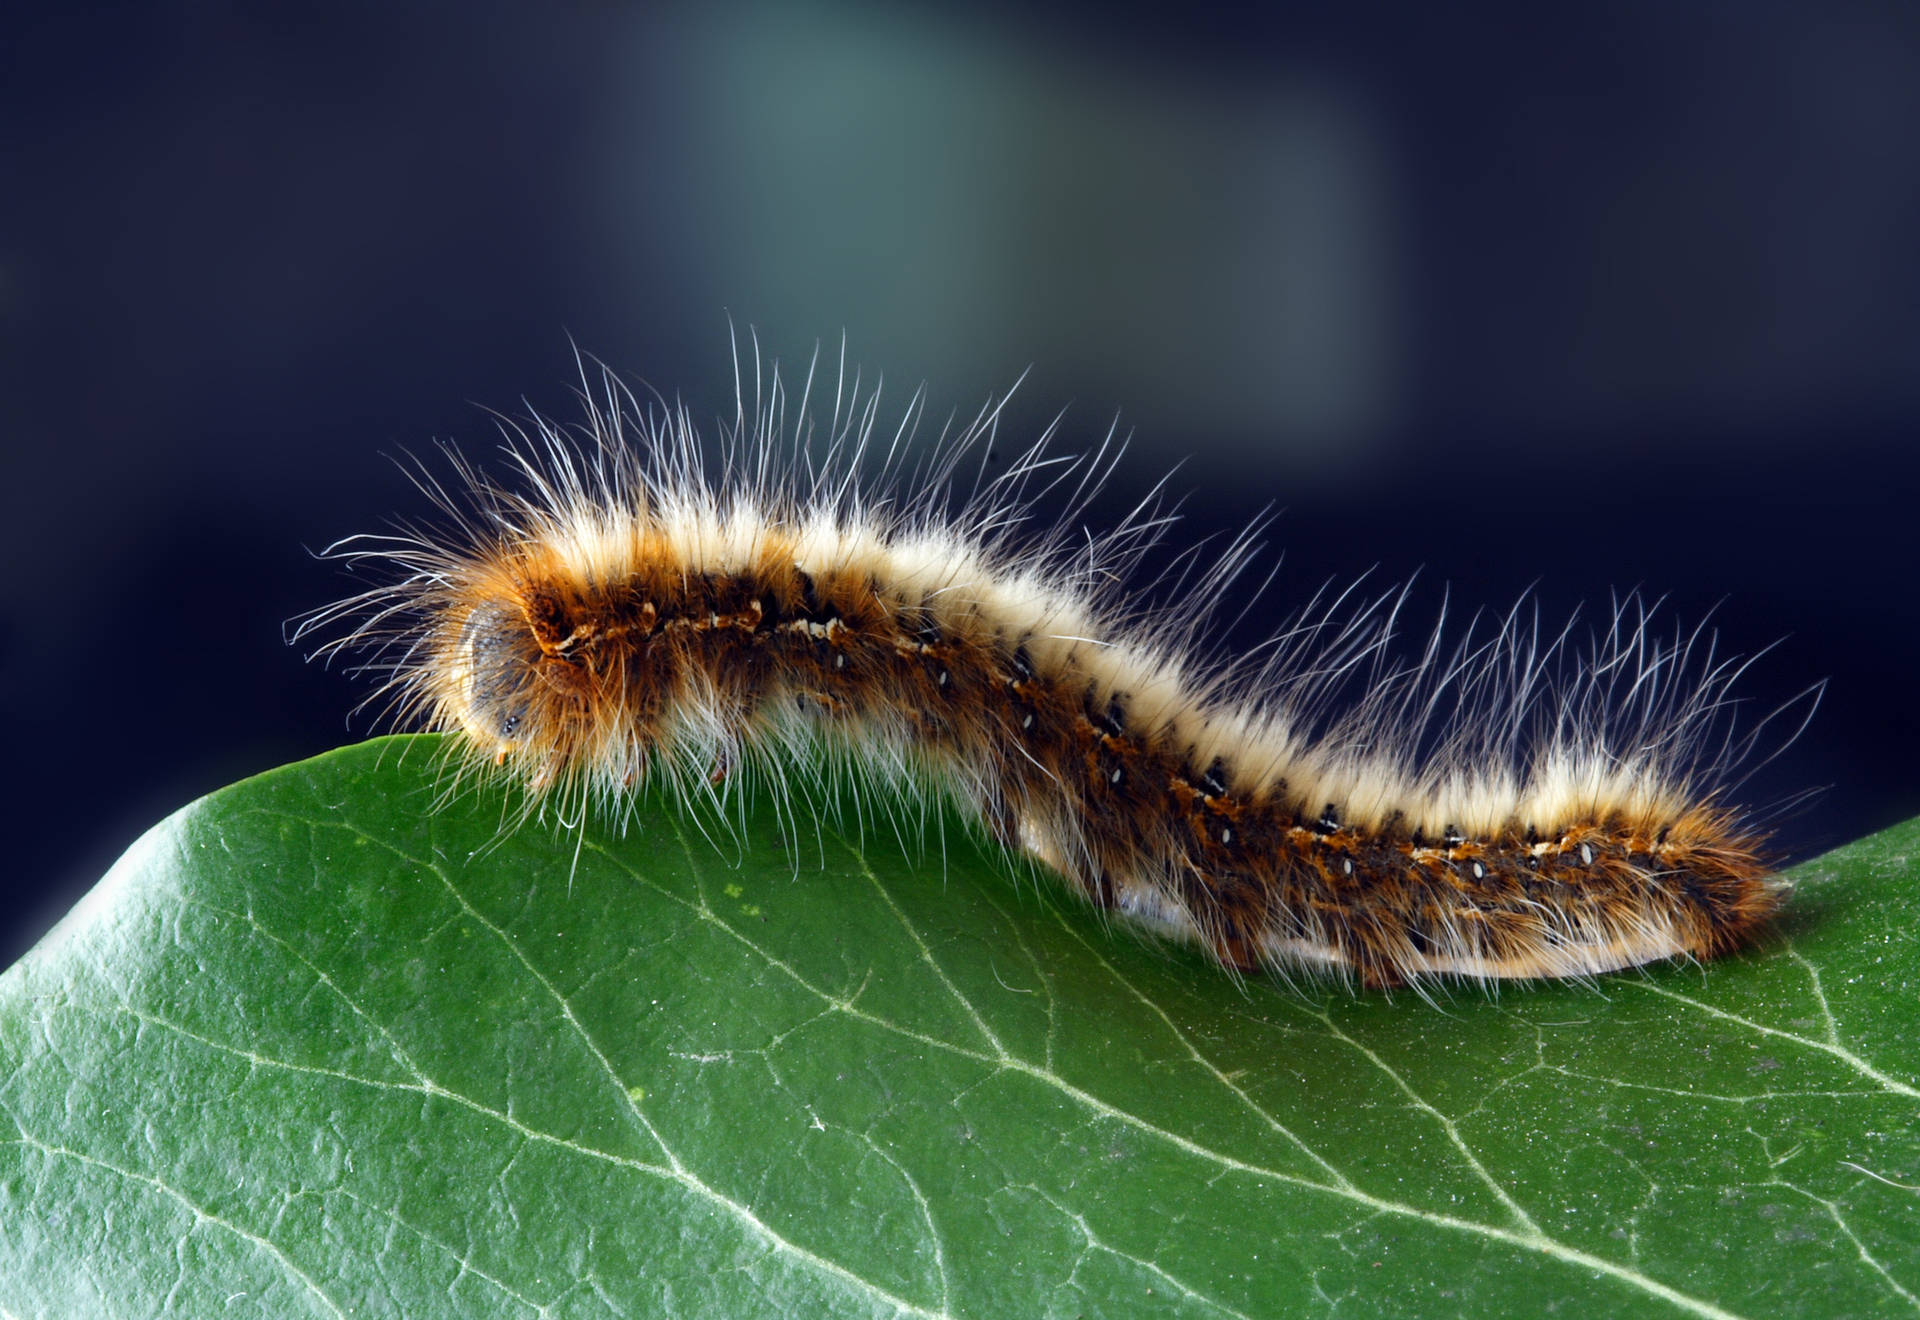 Håret caterpillar ligner en orm Wallpaper